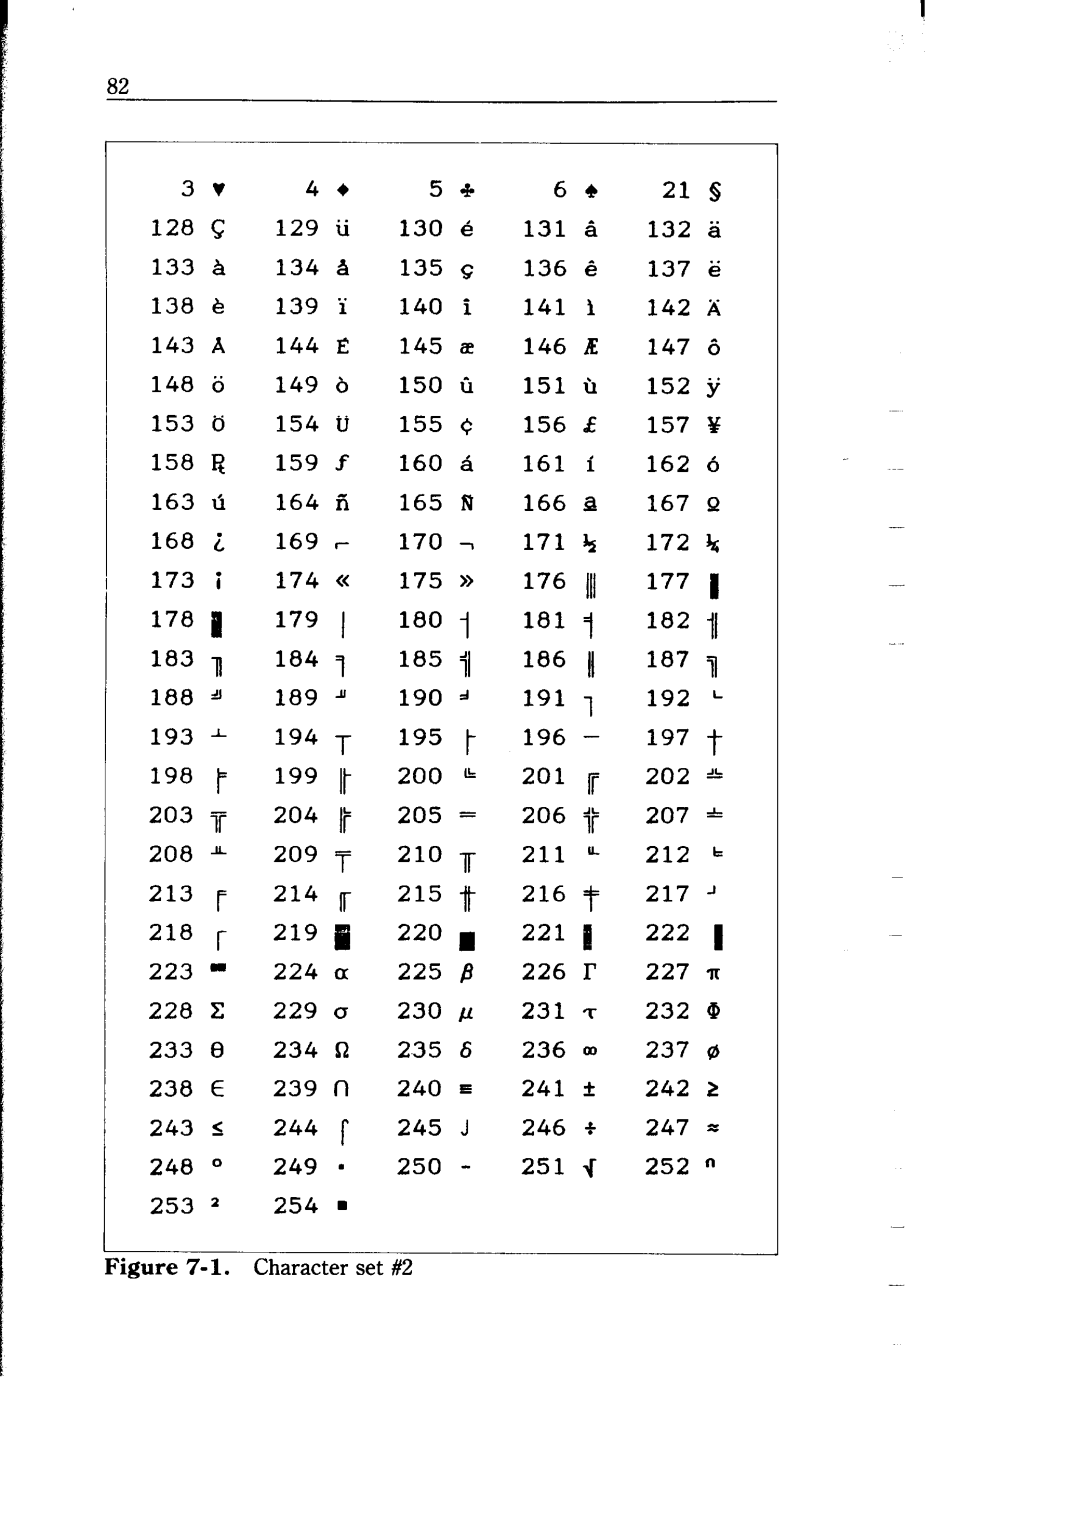 Star Micronics NB-15 user manual 134 a, 159 f, 164 A, 169 c, 189 J, 190 d, 193 -l, 194 T, ILgg It, 229 CJ 